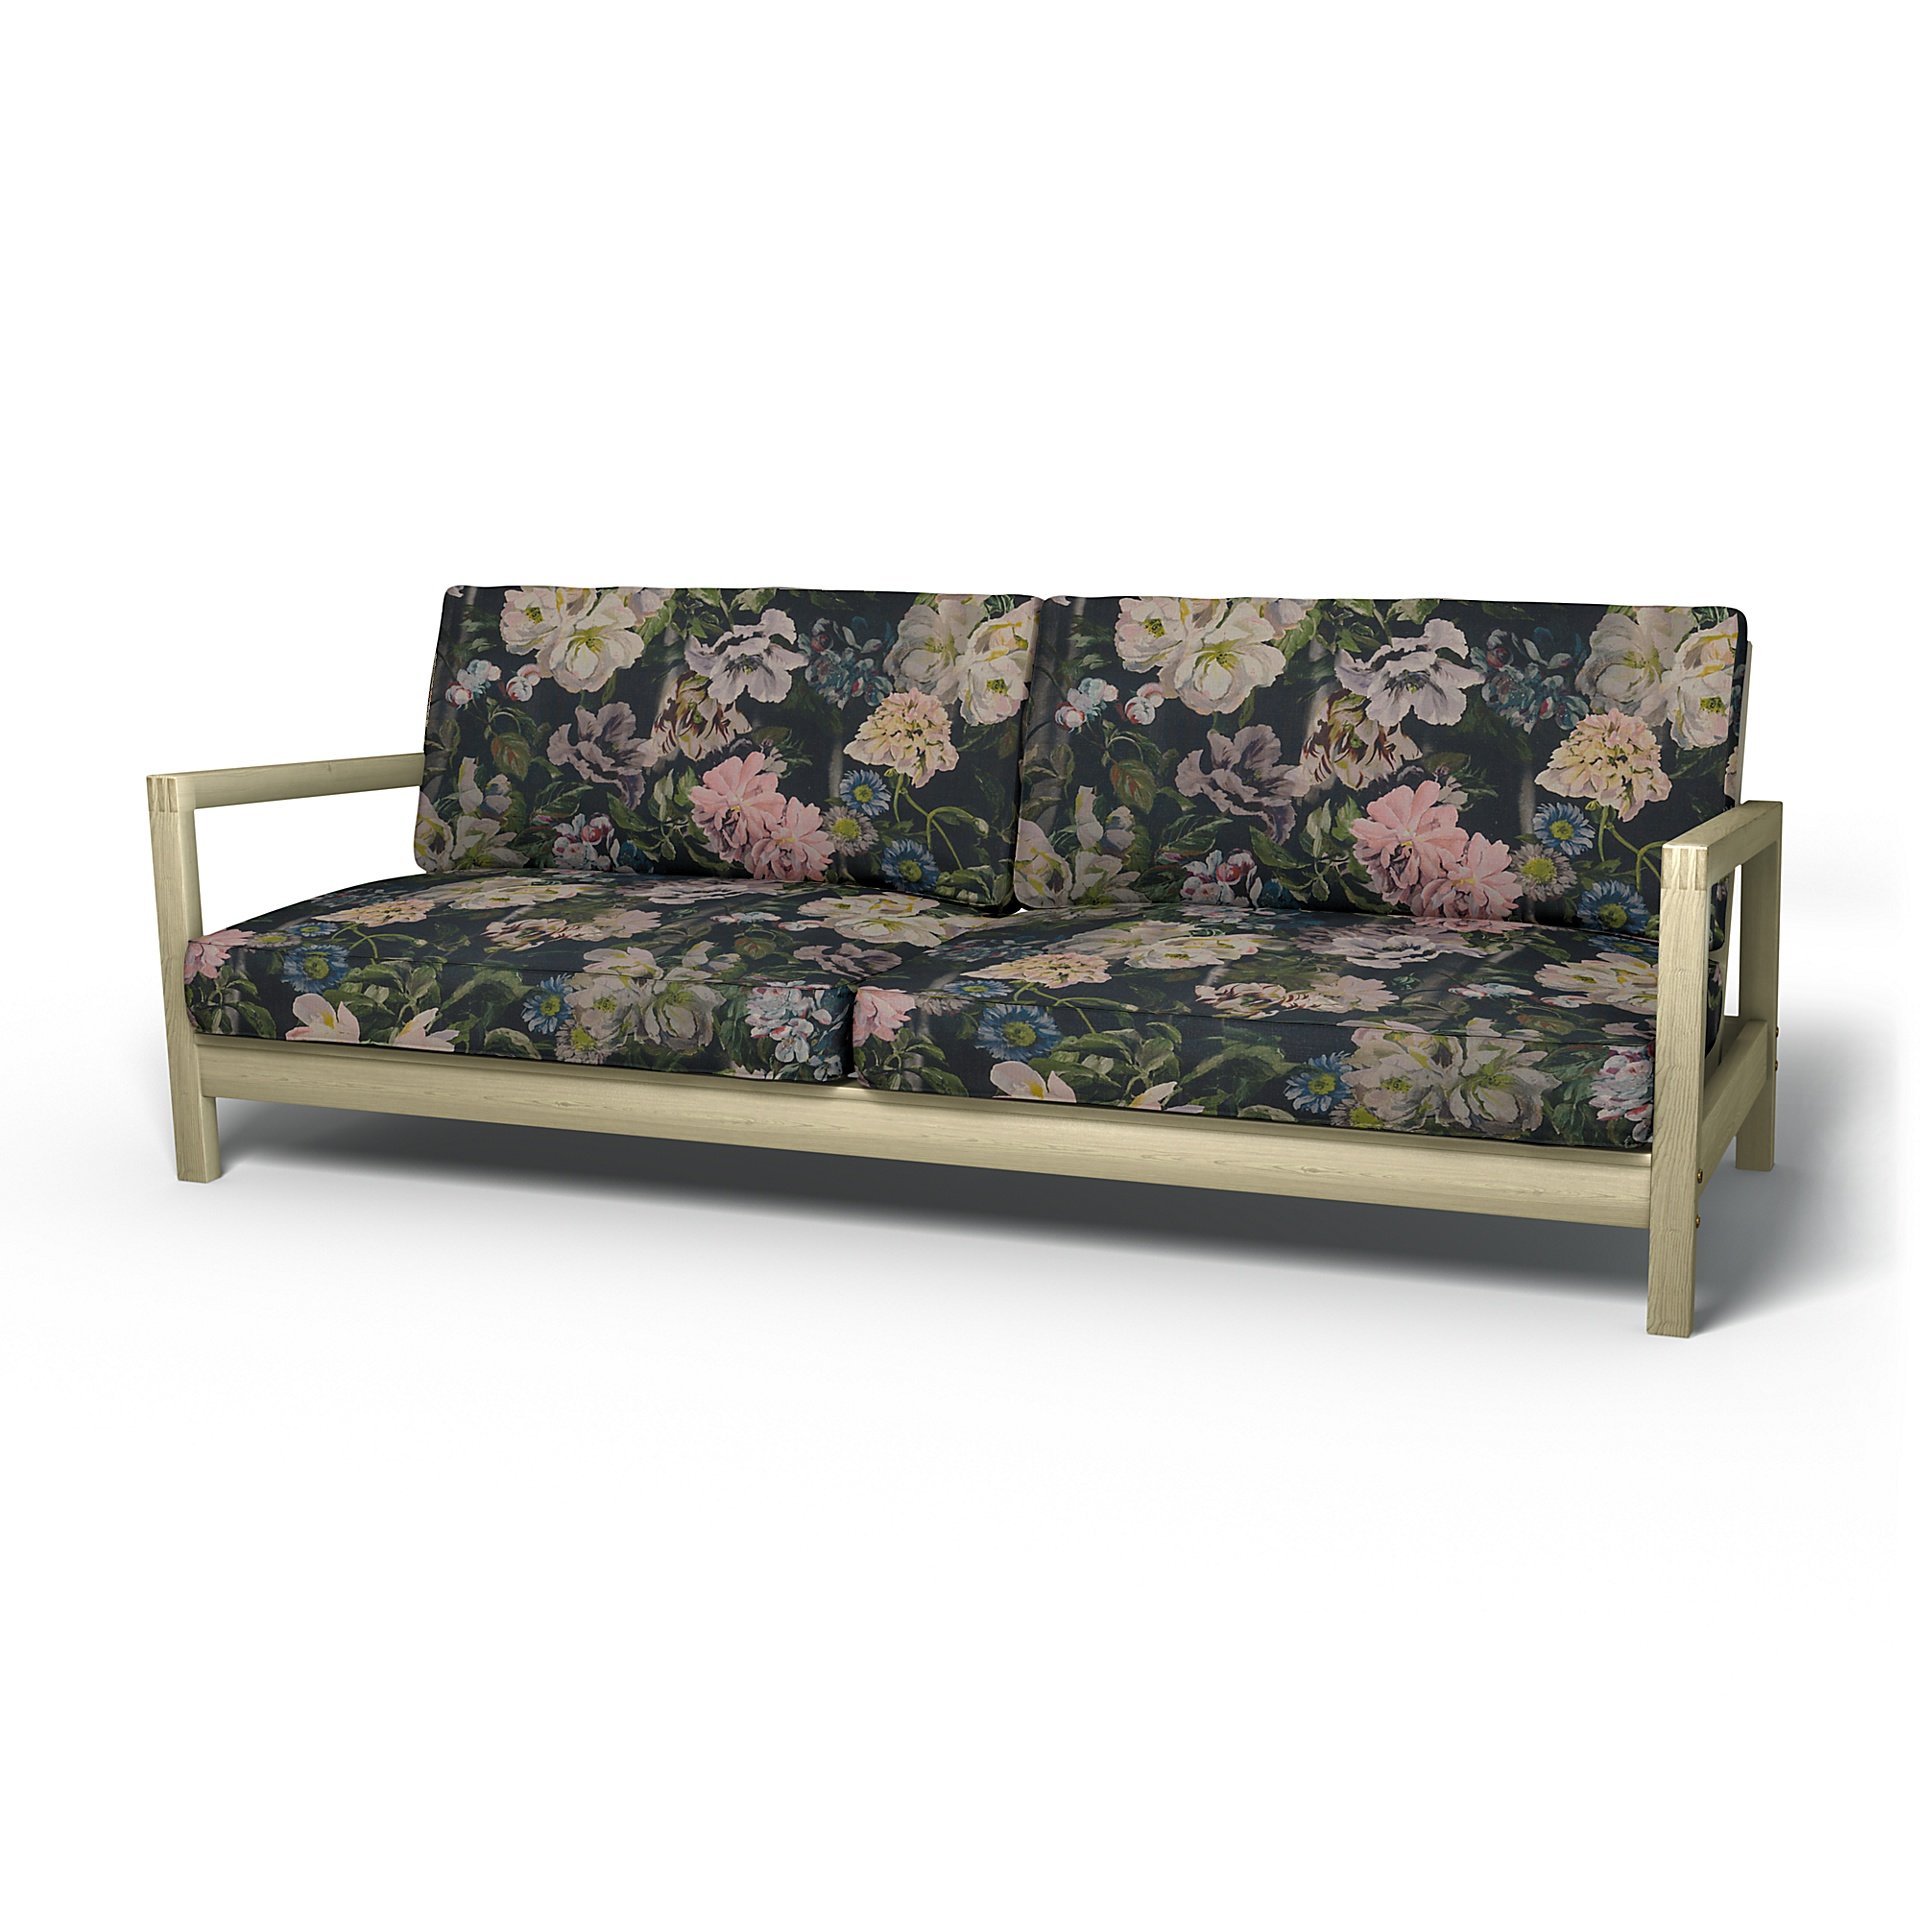 IKEA - Lillberg Sofa Bed Cover, Delft Flower - Graphite, Linen - Bemz